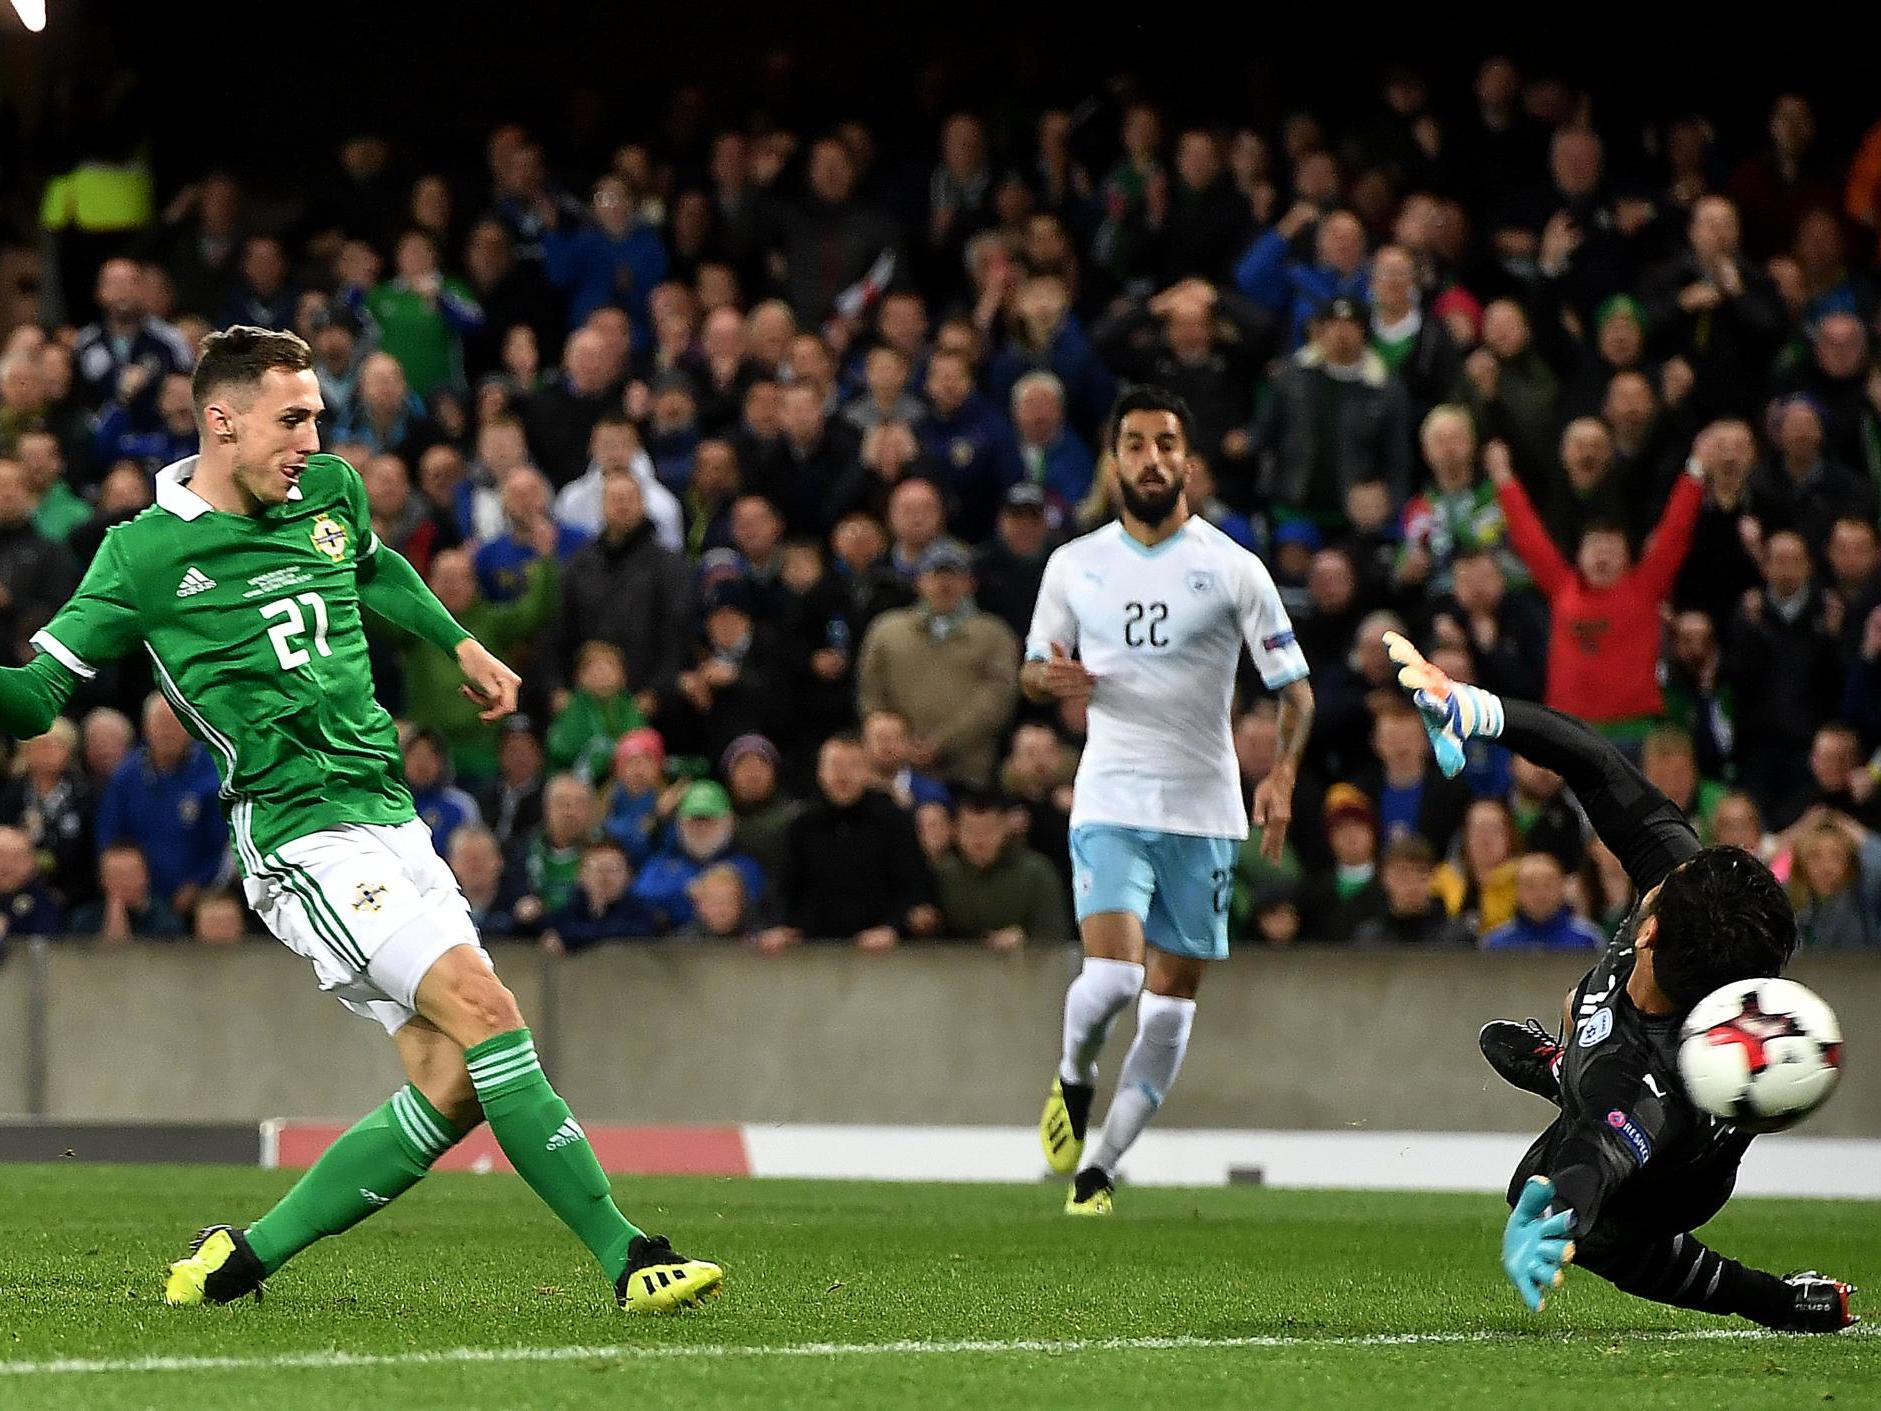 Gavin Whyte scores Northern Ireland's third goal